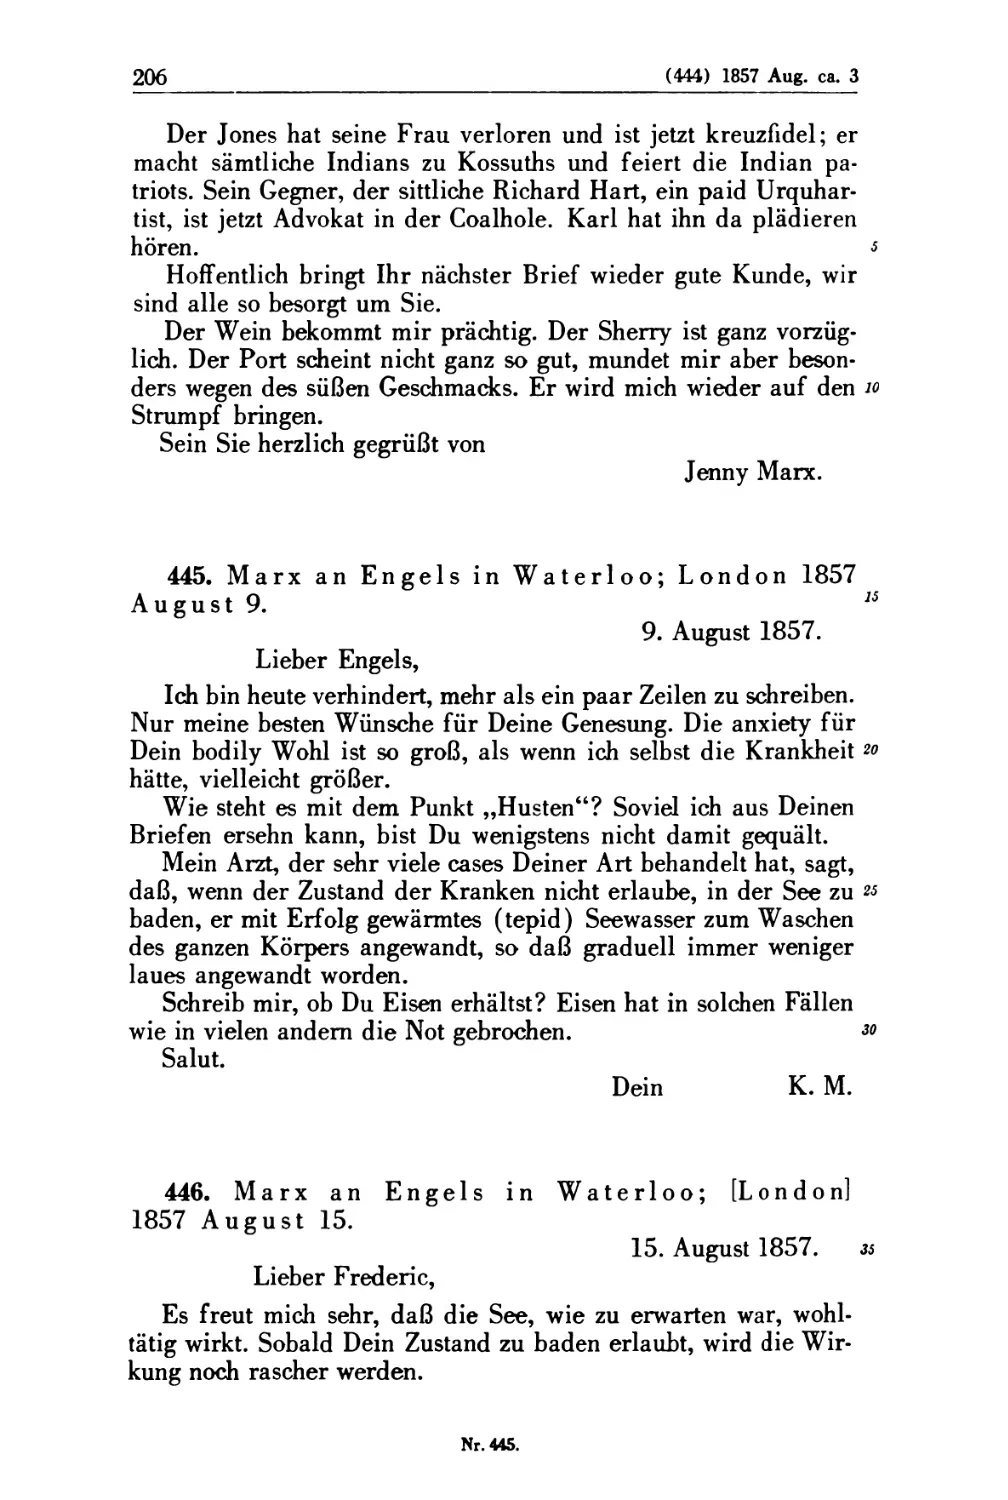 445. Marx an Engels in Waterloo; London 1857 August 9
446. Marx an Engels in Waterloo; [London] 1857 August 15